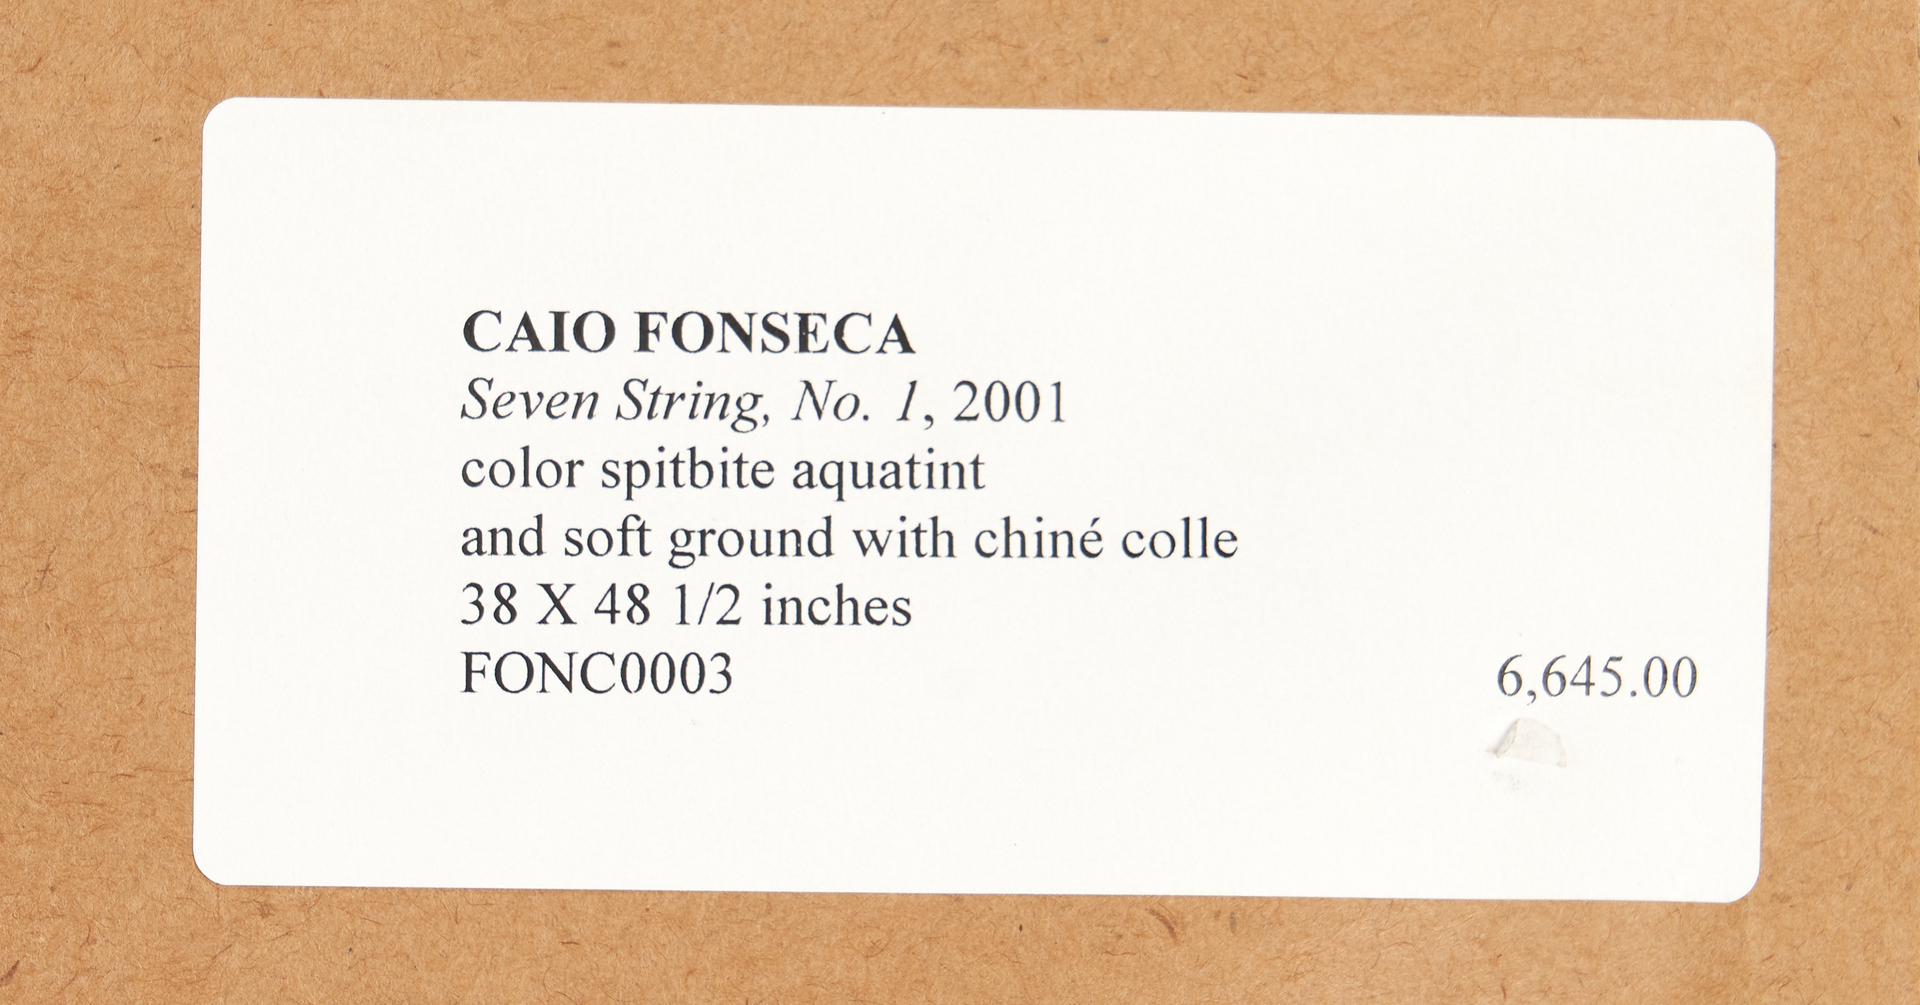 Lot 598: Caio Fonseca Abstract Mixed Media Print, Seven String, No. 1